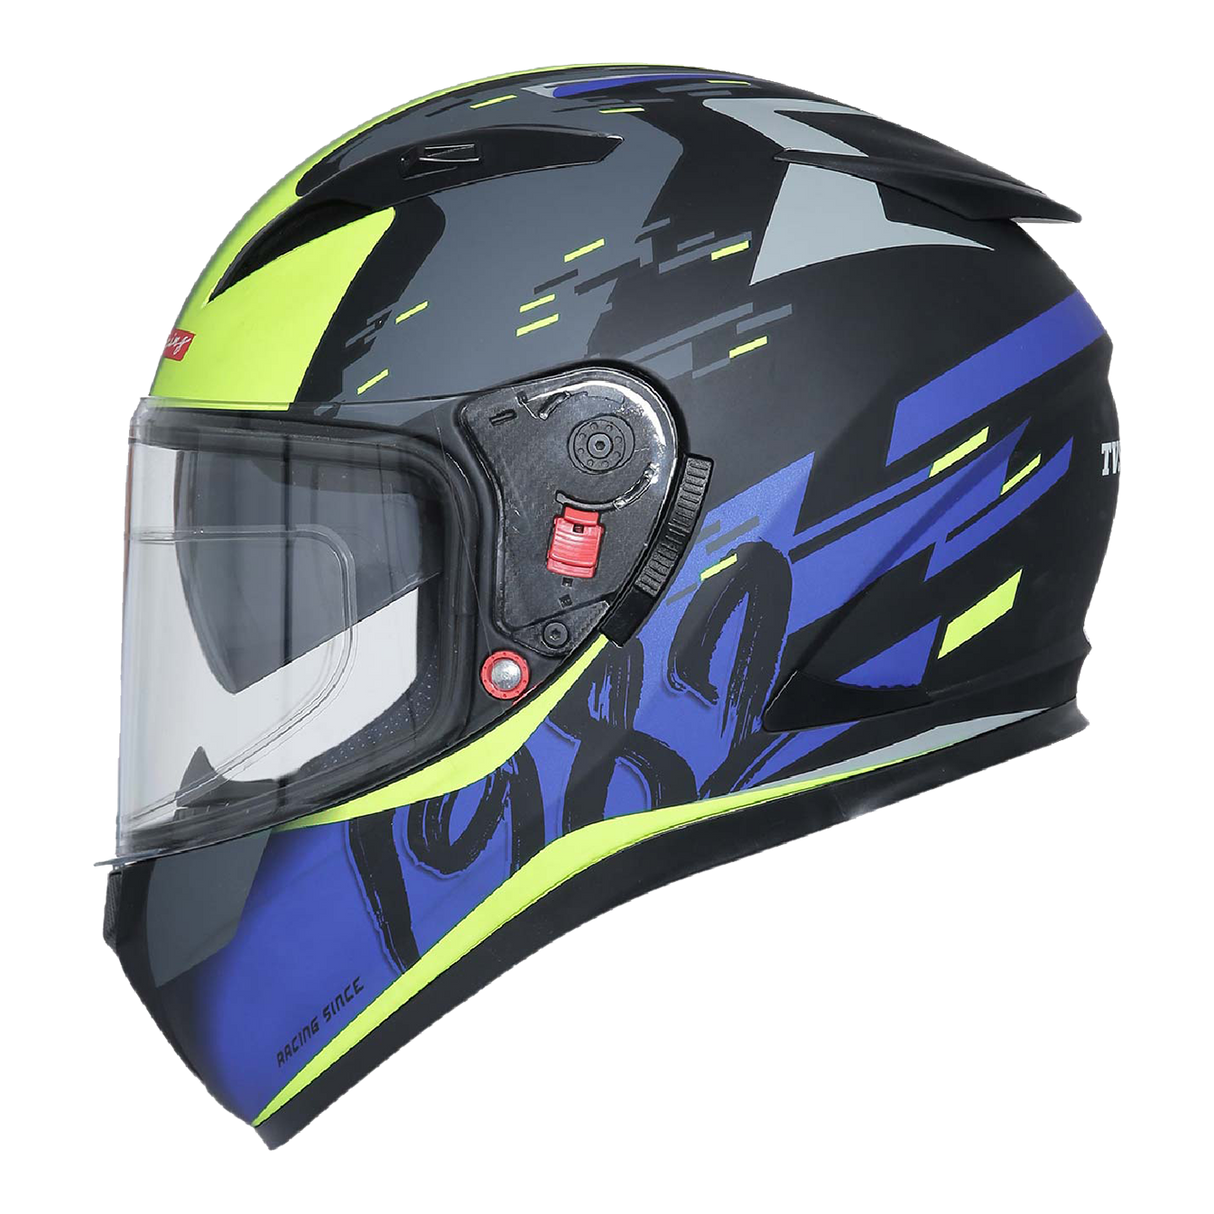 TVS Racing Helmet Matt Neon & Blue - Dual Visor